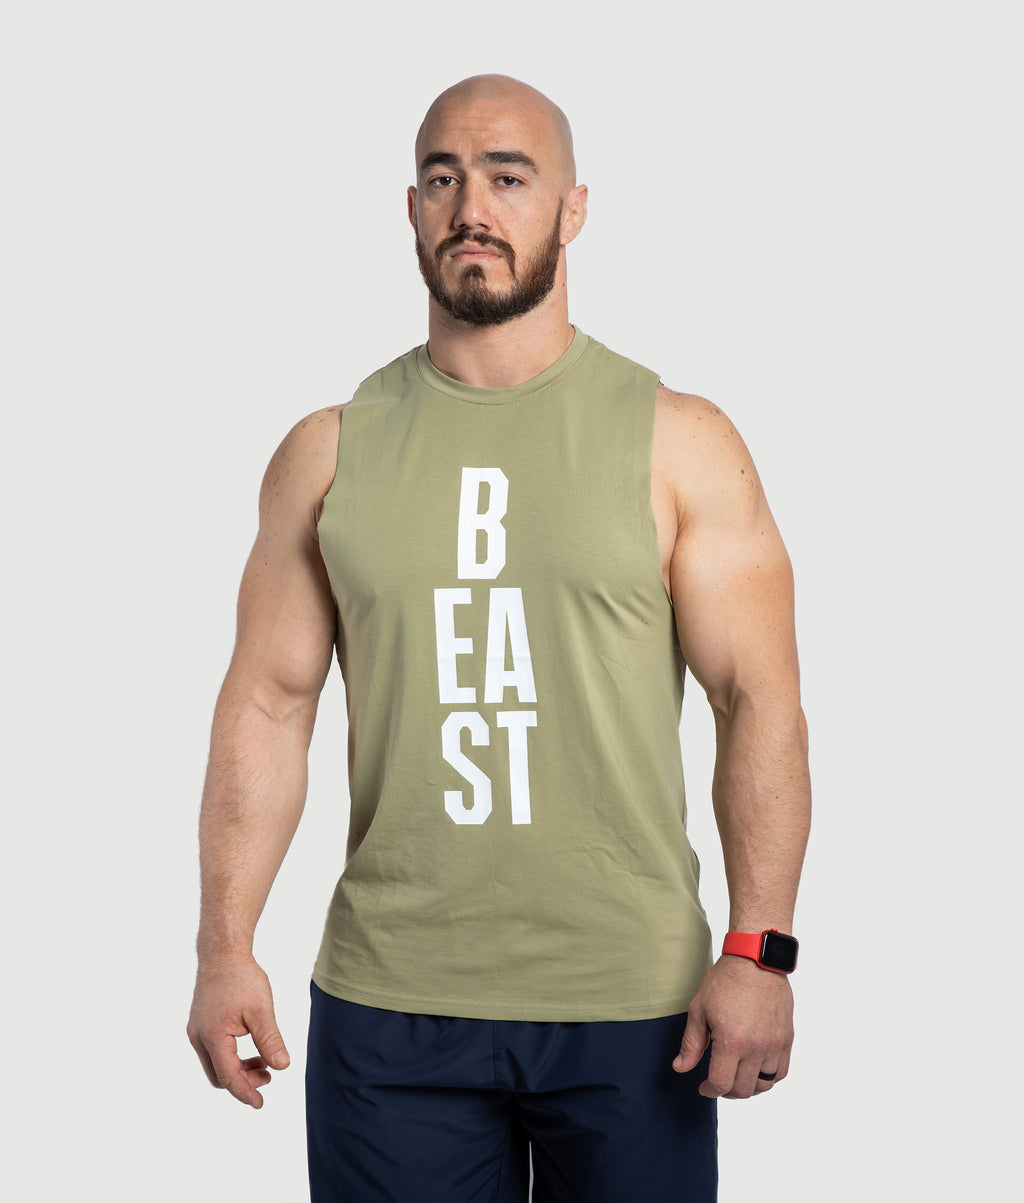 Shop Men's Sleeveless Shirts - Beast - Green